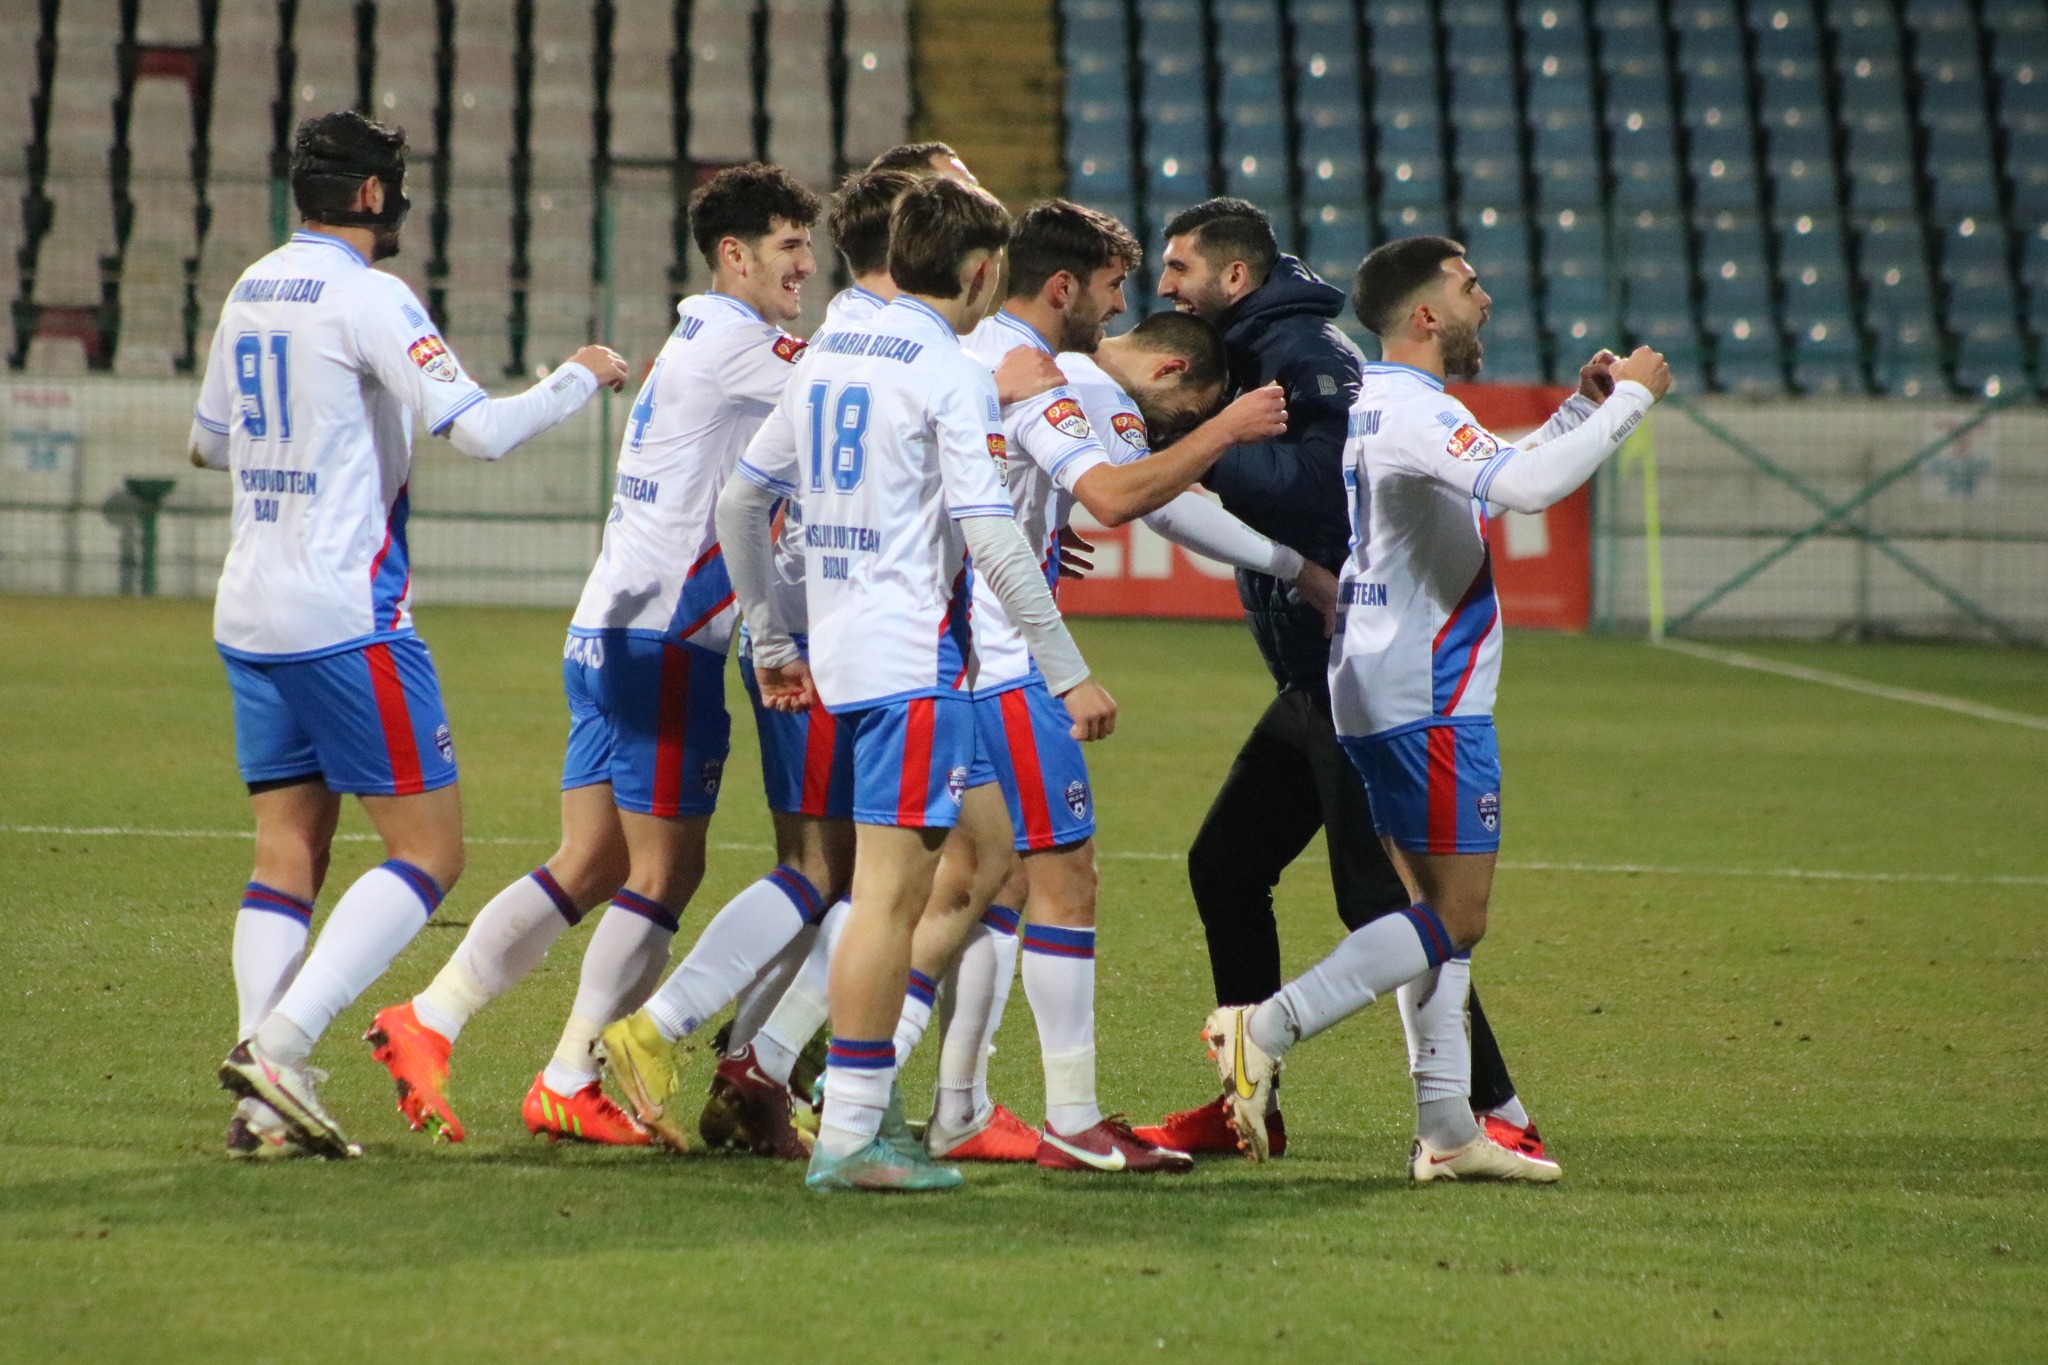 (UPDATE) Antrenorul Mihalcea: ,,Urmărim locul 2 de promovare”. Primul meci din play-off, în deplasare, cu Dinamo